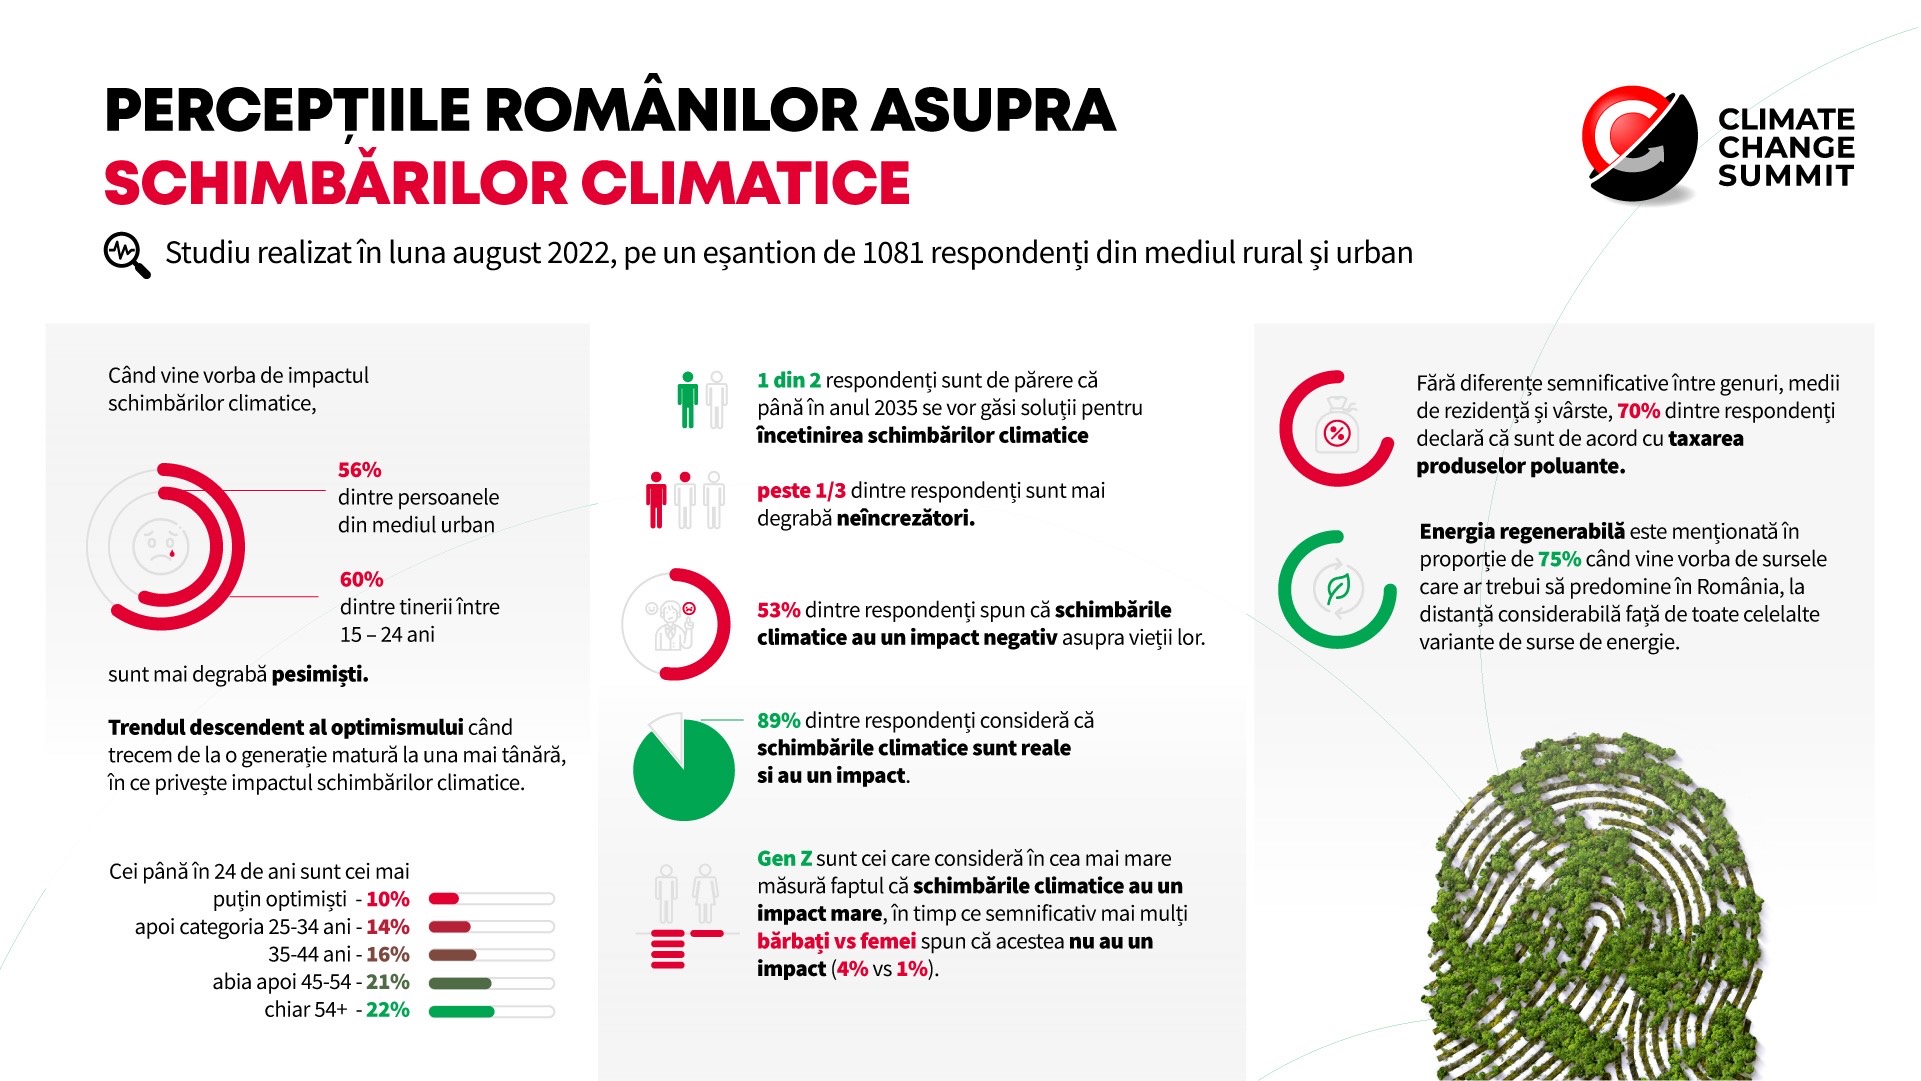 75% din români cred că sursele de energie regenerabilă ar trebui să predomine